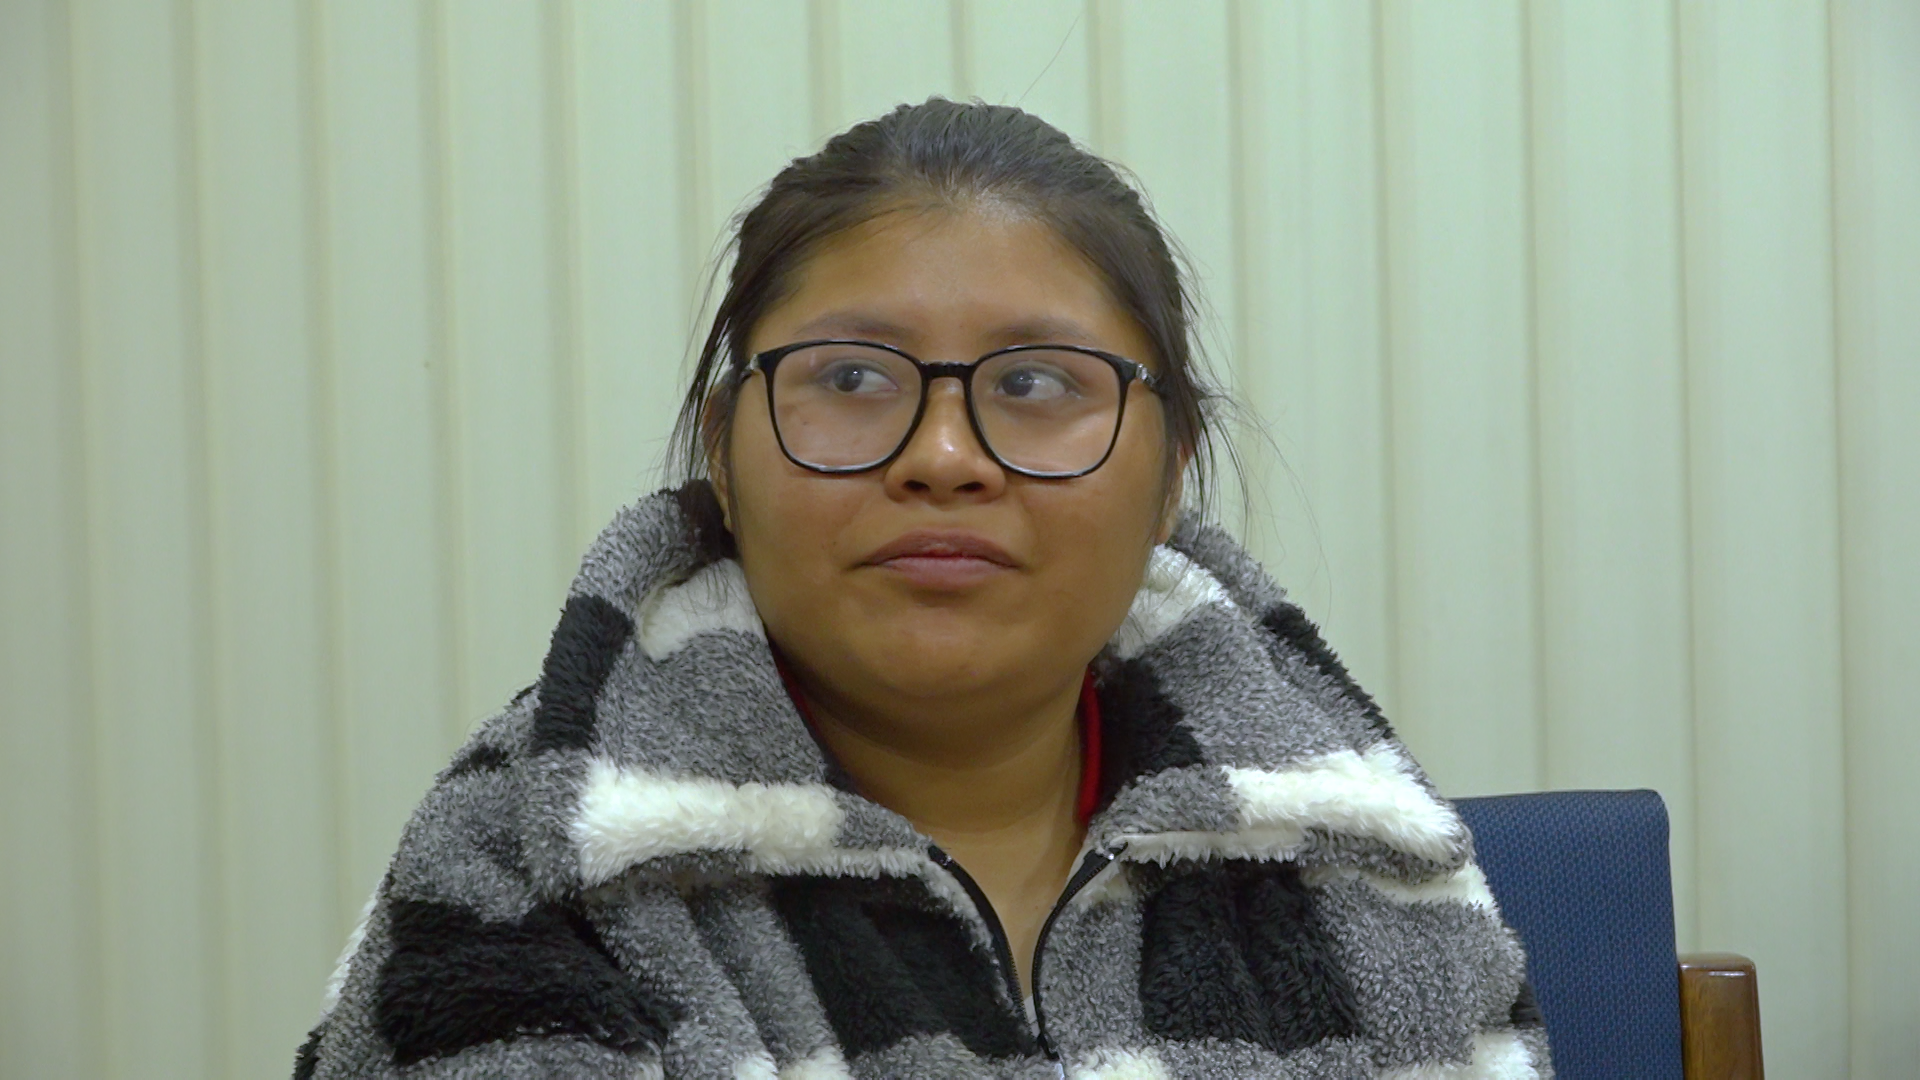 Justicia ordena a ESFM de El Alto restituir el derecho a la educación de joven hipoacúsica, Defensoría presentó amparo constitucional